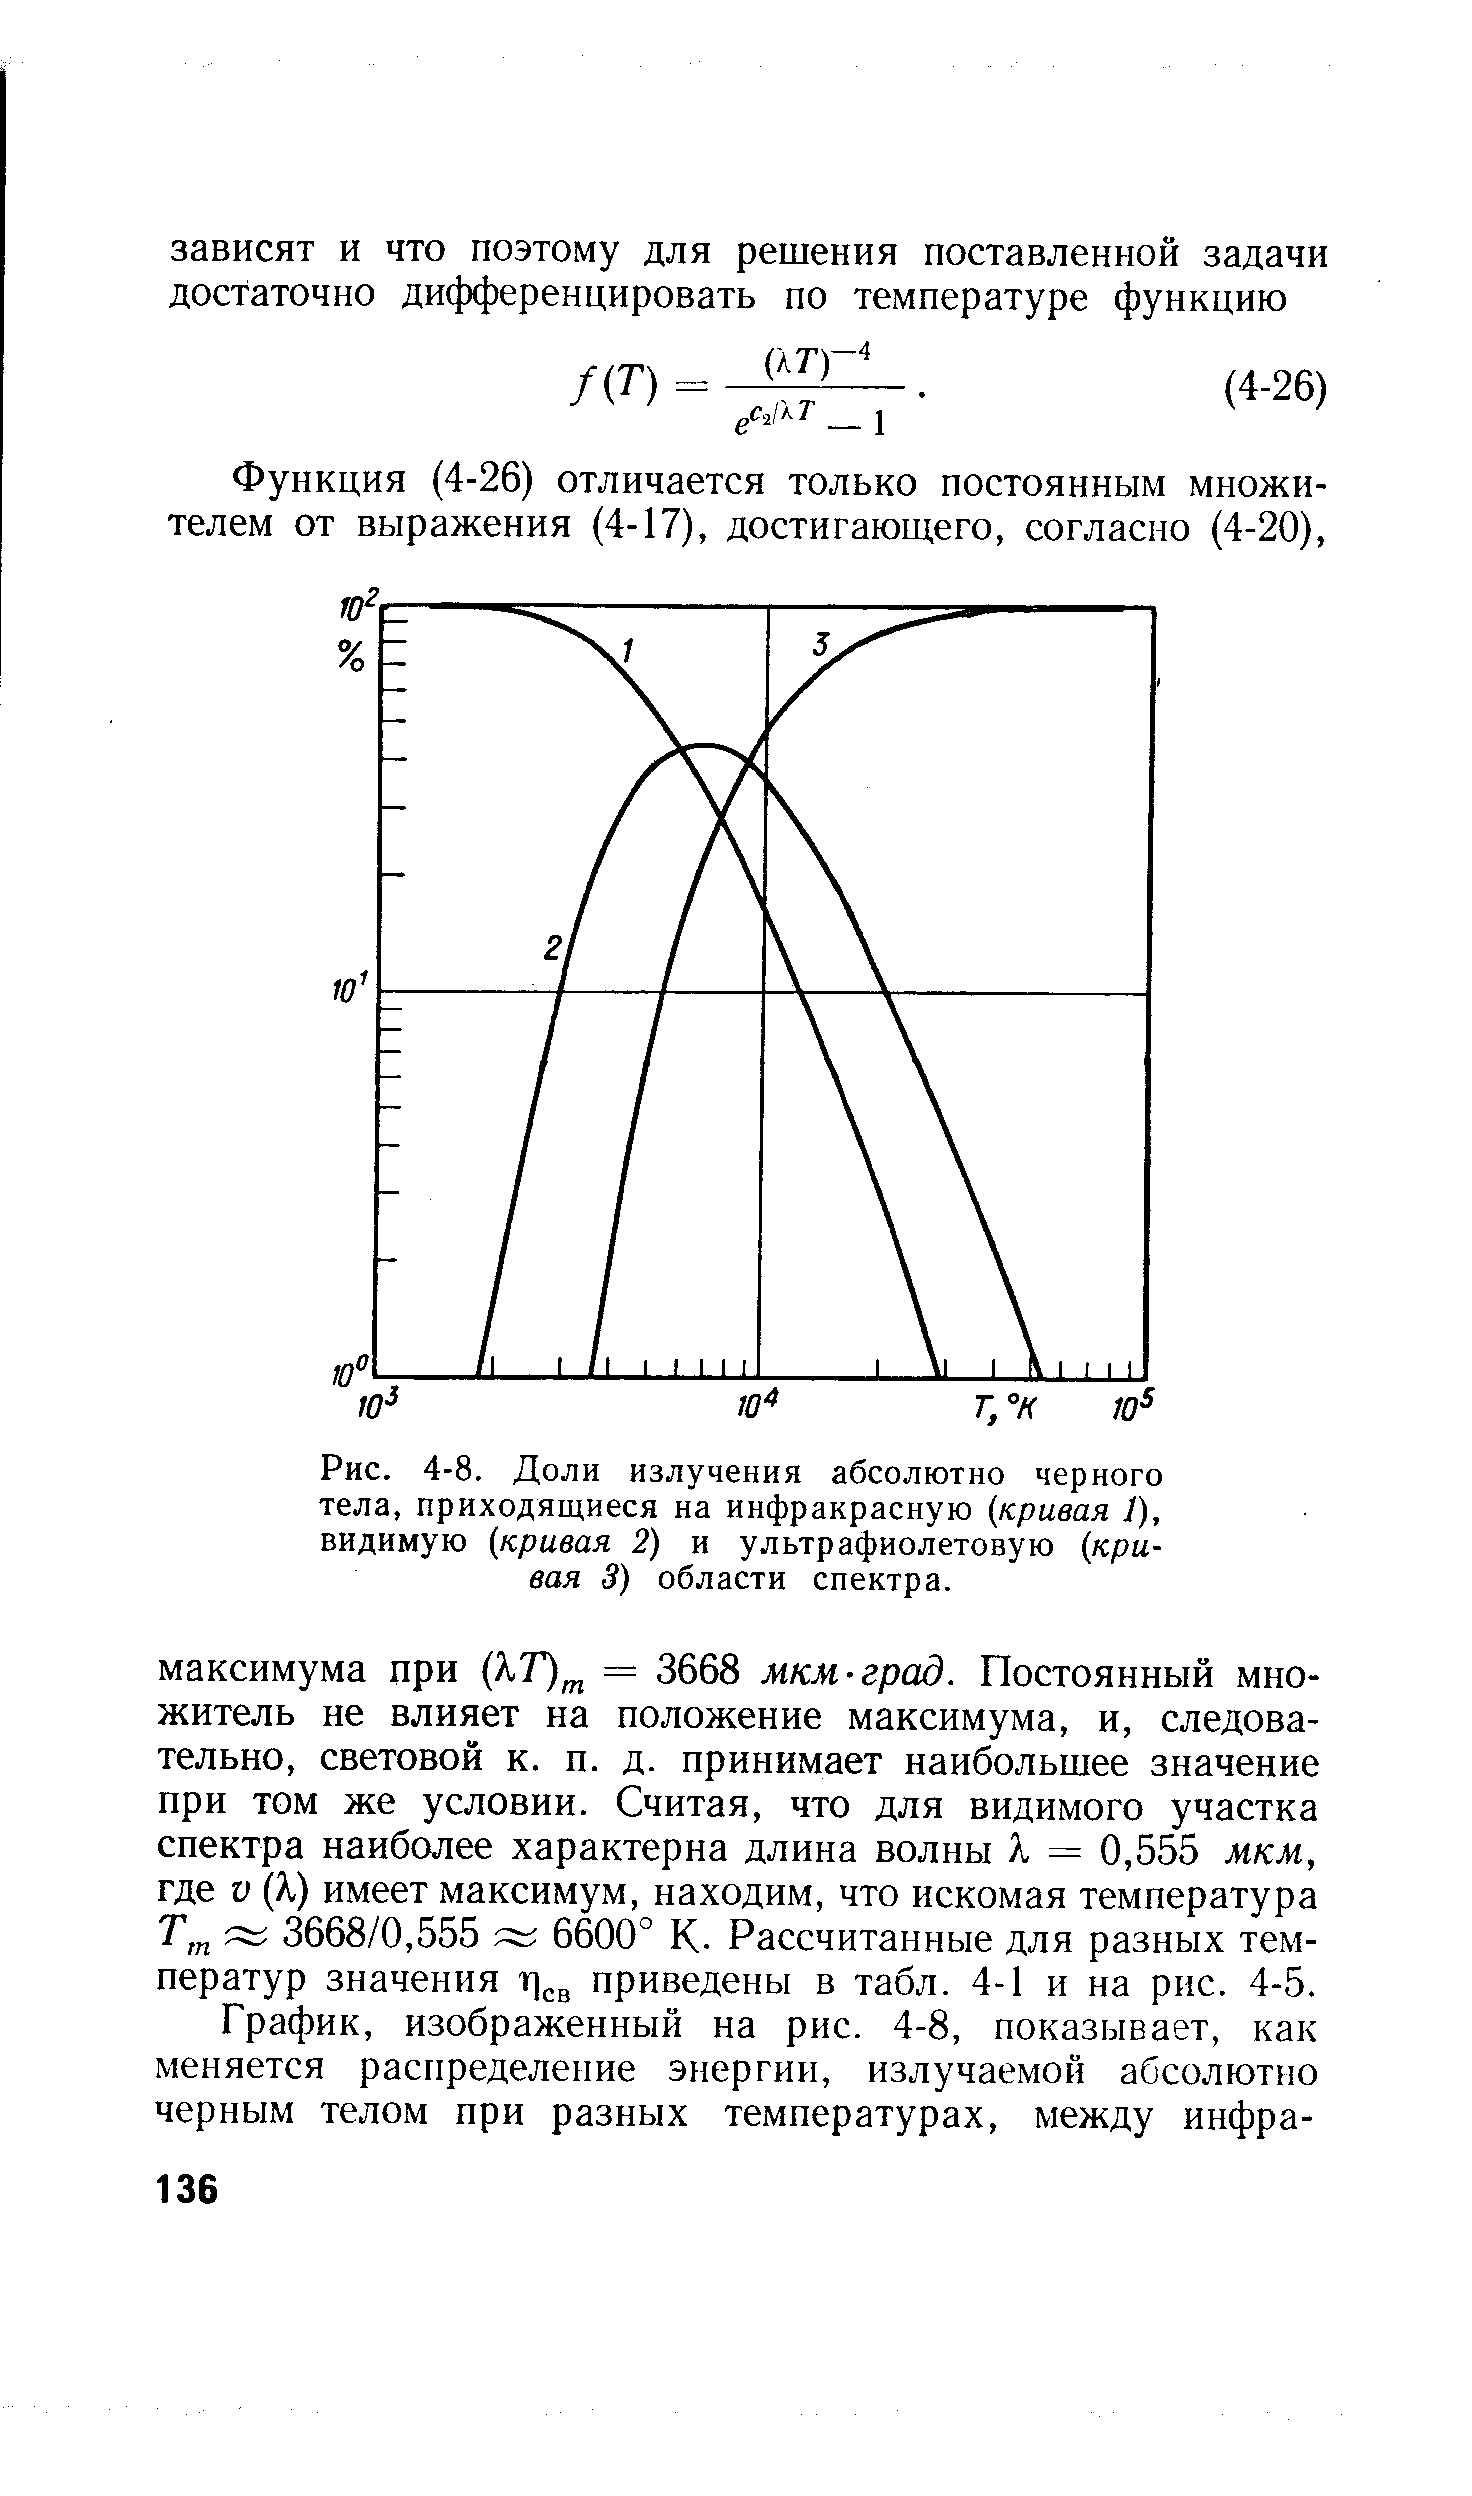 Рис. 4-8. Доли излучения абсолютно черного тела, приходящиеся на инфракрасную кривая 1), видимую кривая 2) и ультрафиолетовую (кривая 3) области спектра.
